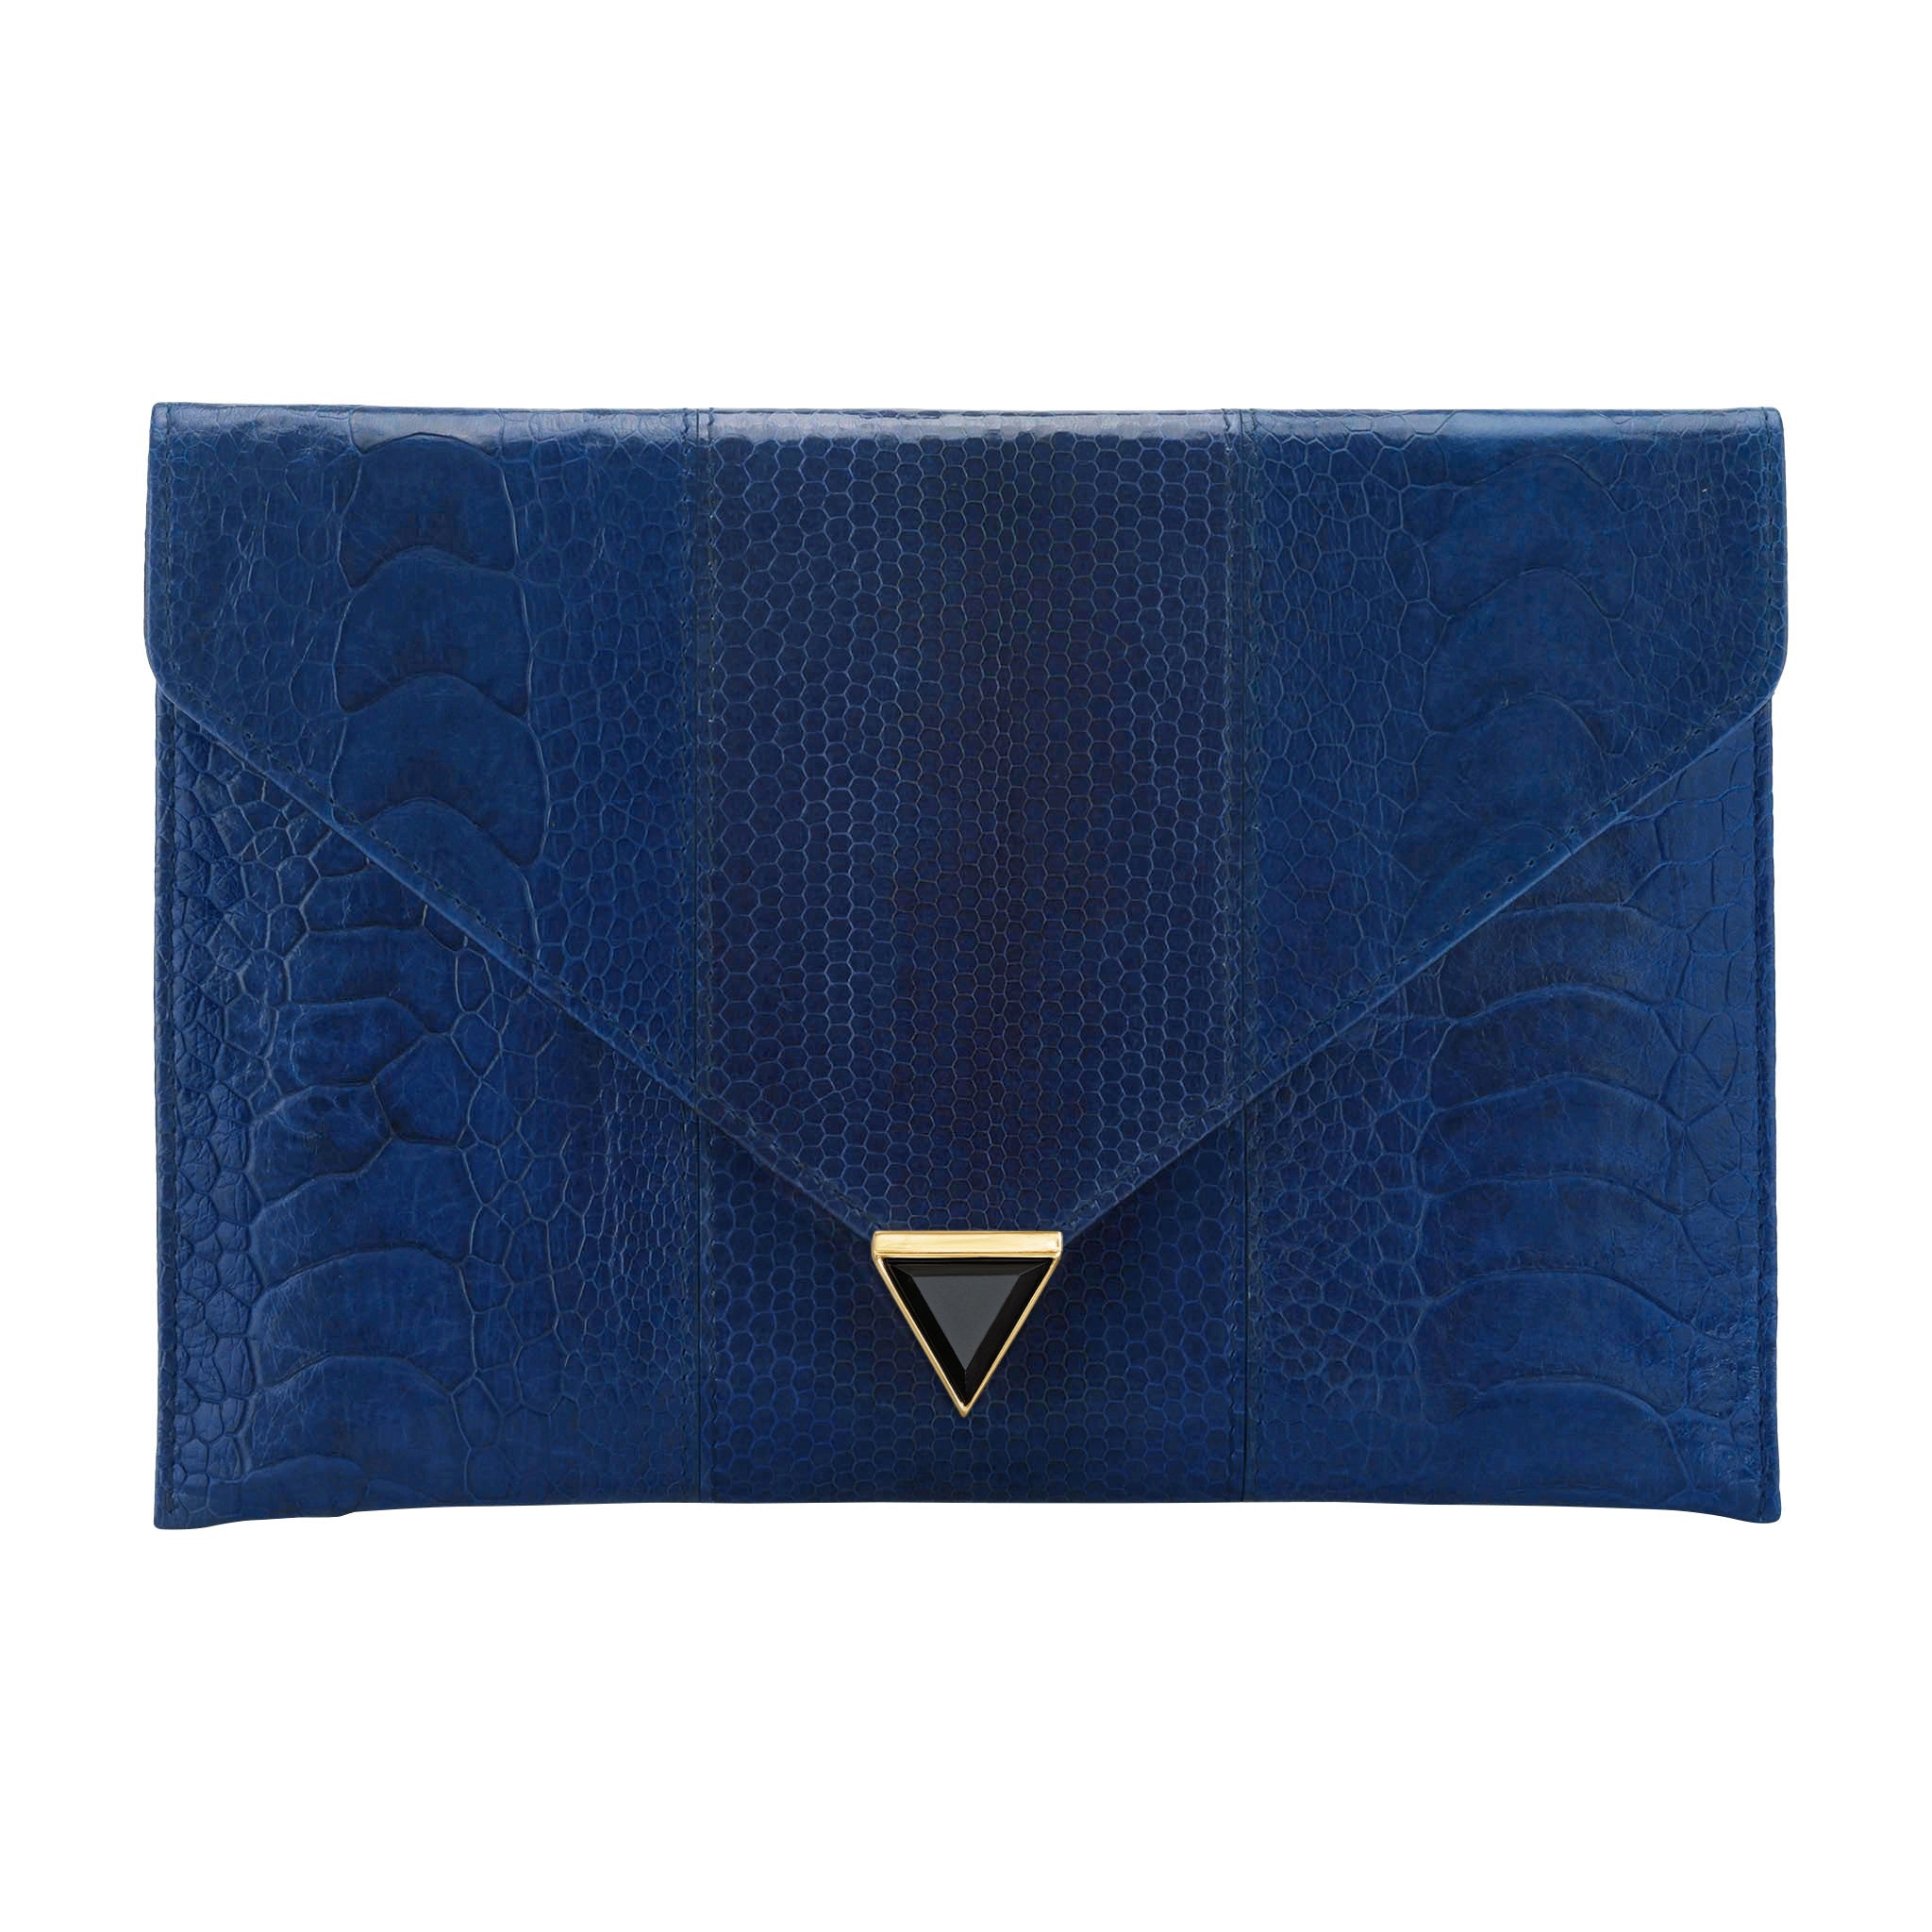 Navy Blue Bag Python Bag Snakeskin Bag Gift for Her -  Denmark